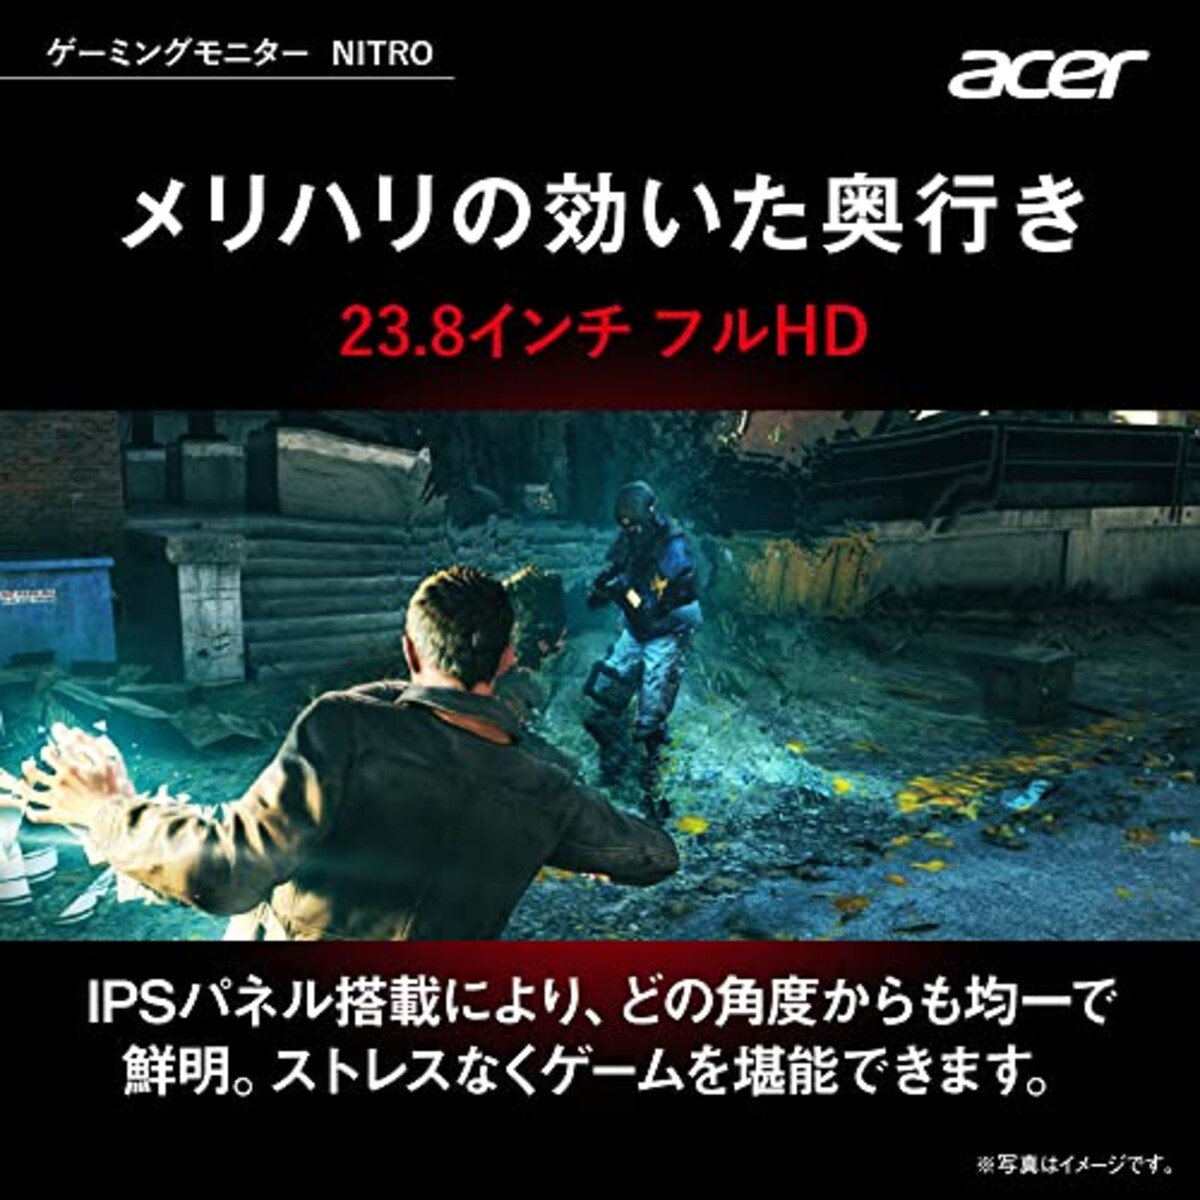  日本エイサー 【Amazon.co.jp限定】 Acer ゲーミングモニター Nitro QG241YEbmiix 23.8インチ IPS 非光沢 フルHD 100Hz 1ms(VRB) HDMI ミニD-Sub15 VESAマウント対応 スピーカー内蔵 ヘッドホン端子 AMD FreeSync画像3 